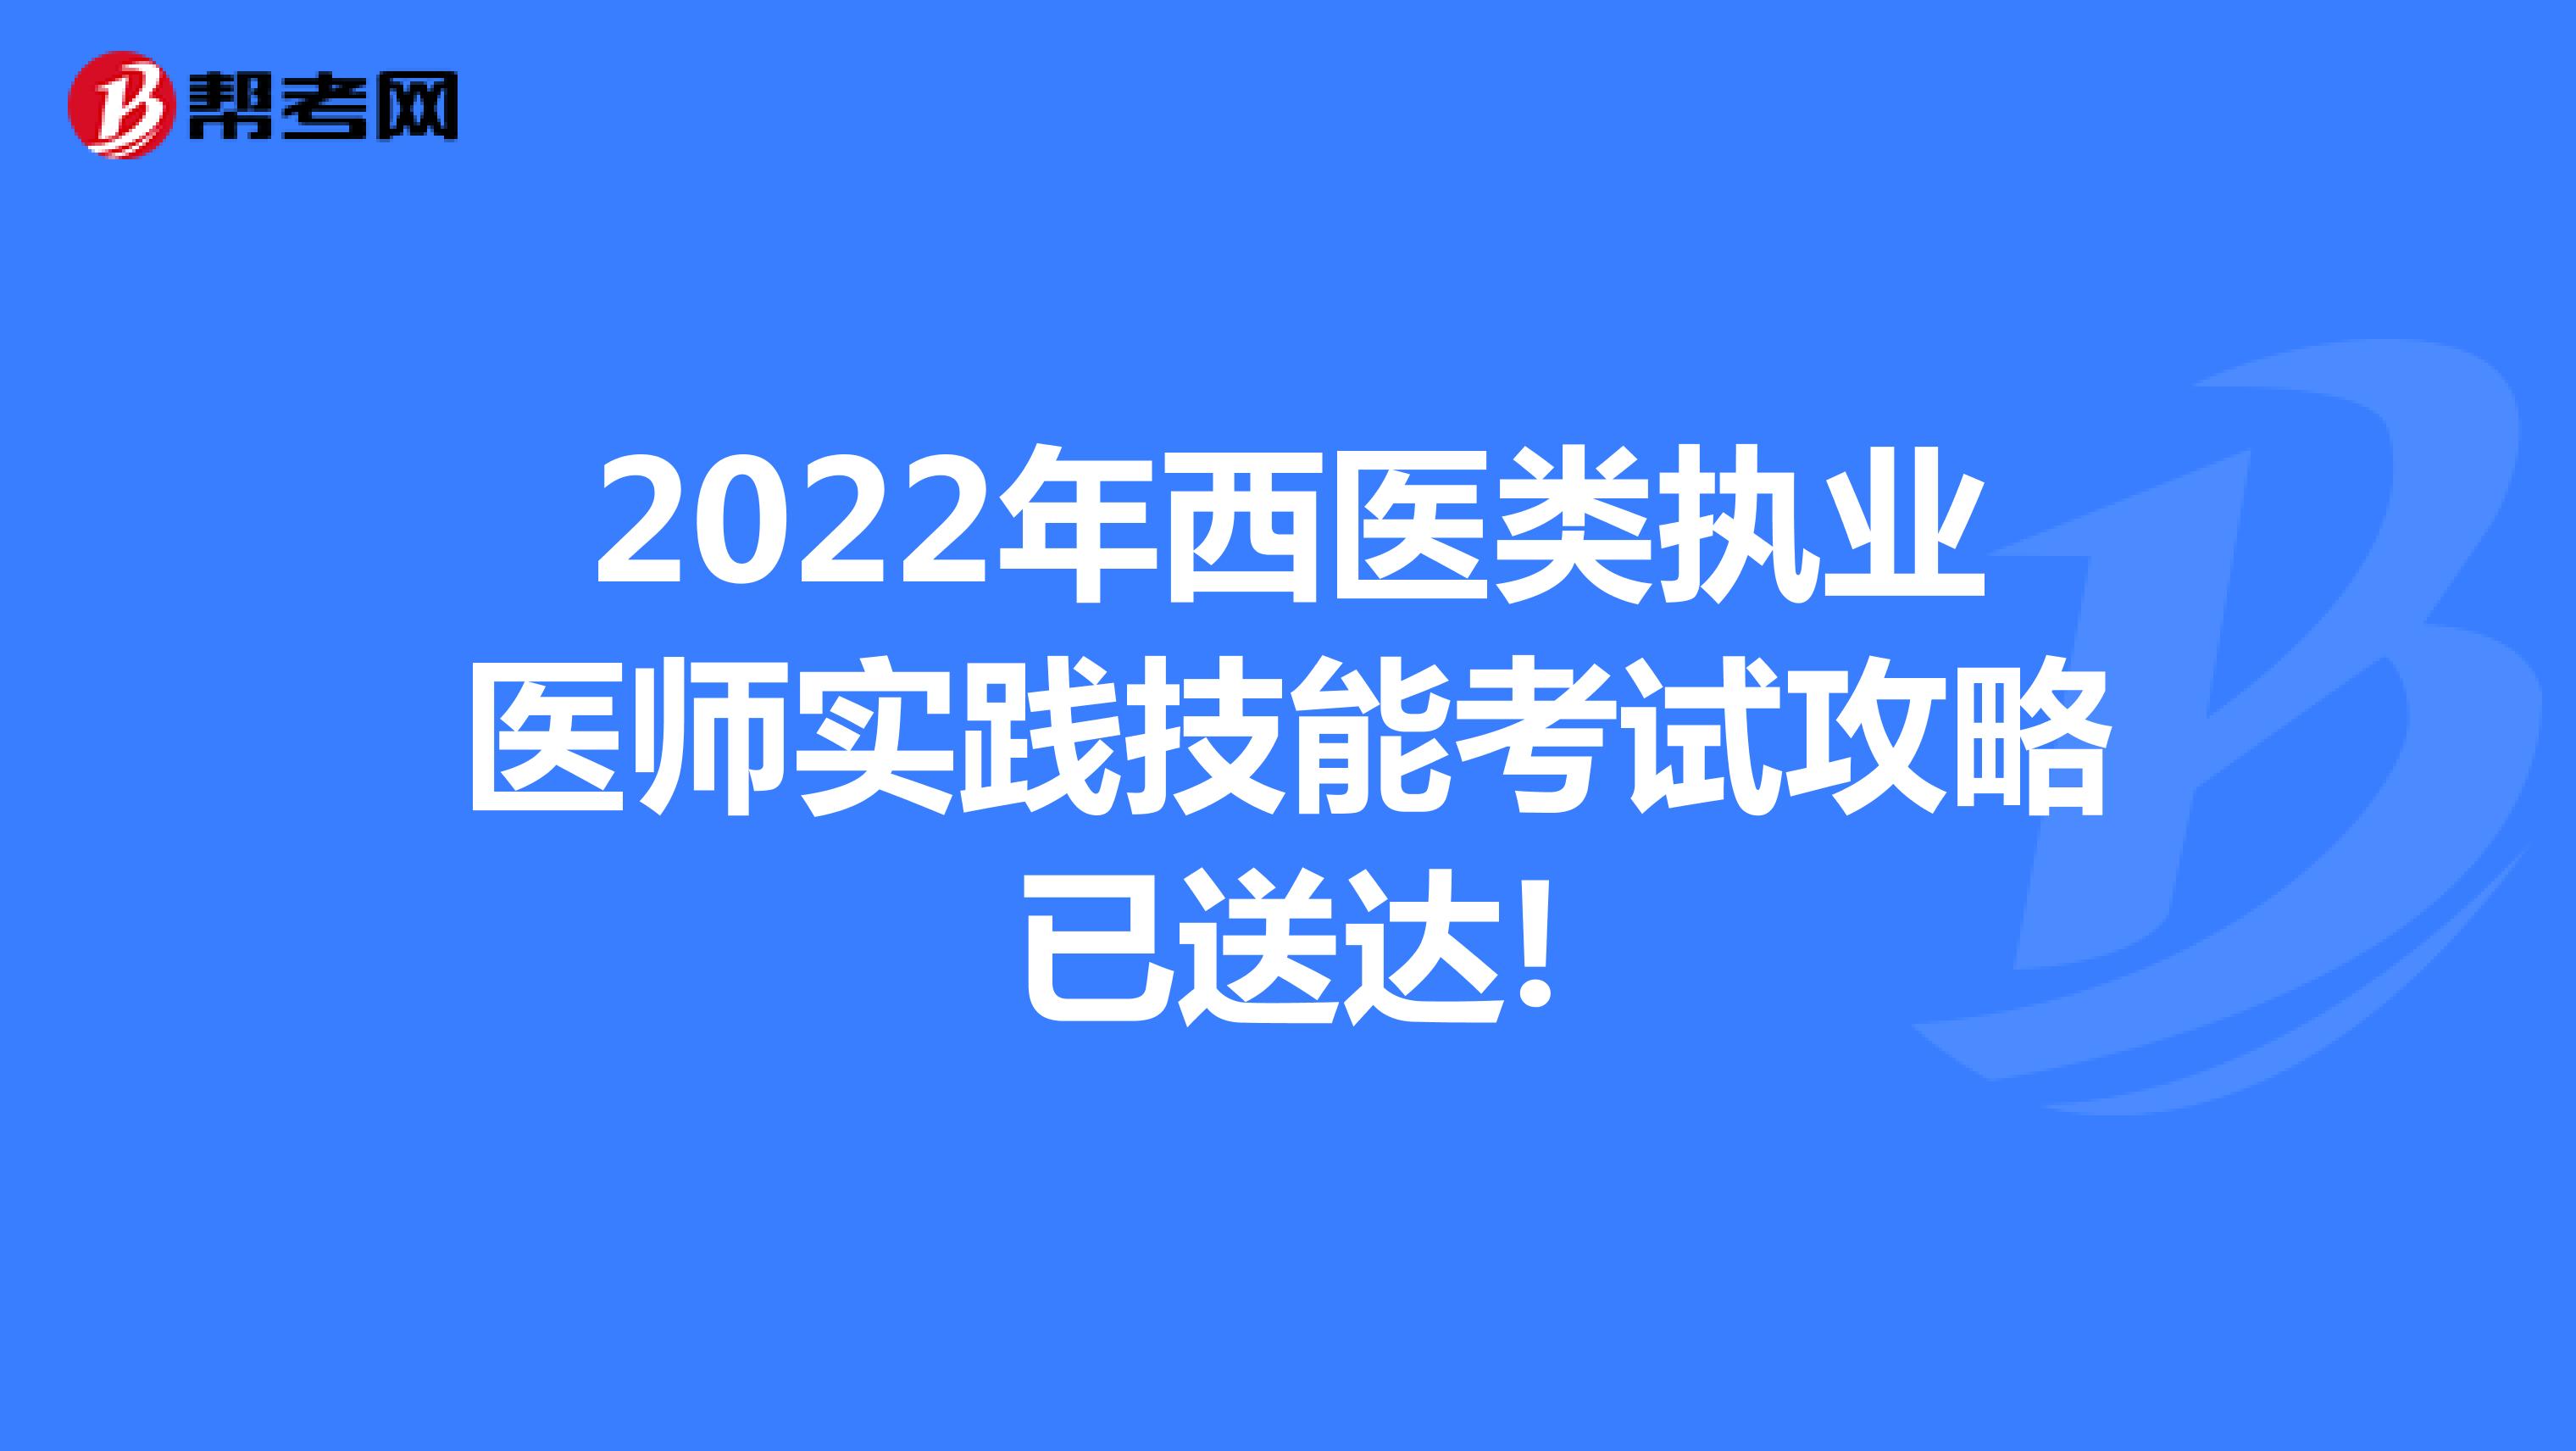 2022年西医类执业医师实践技能考试攻略已送达!